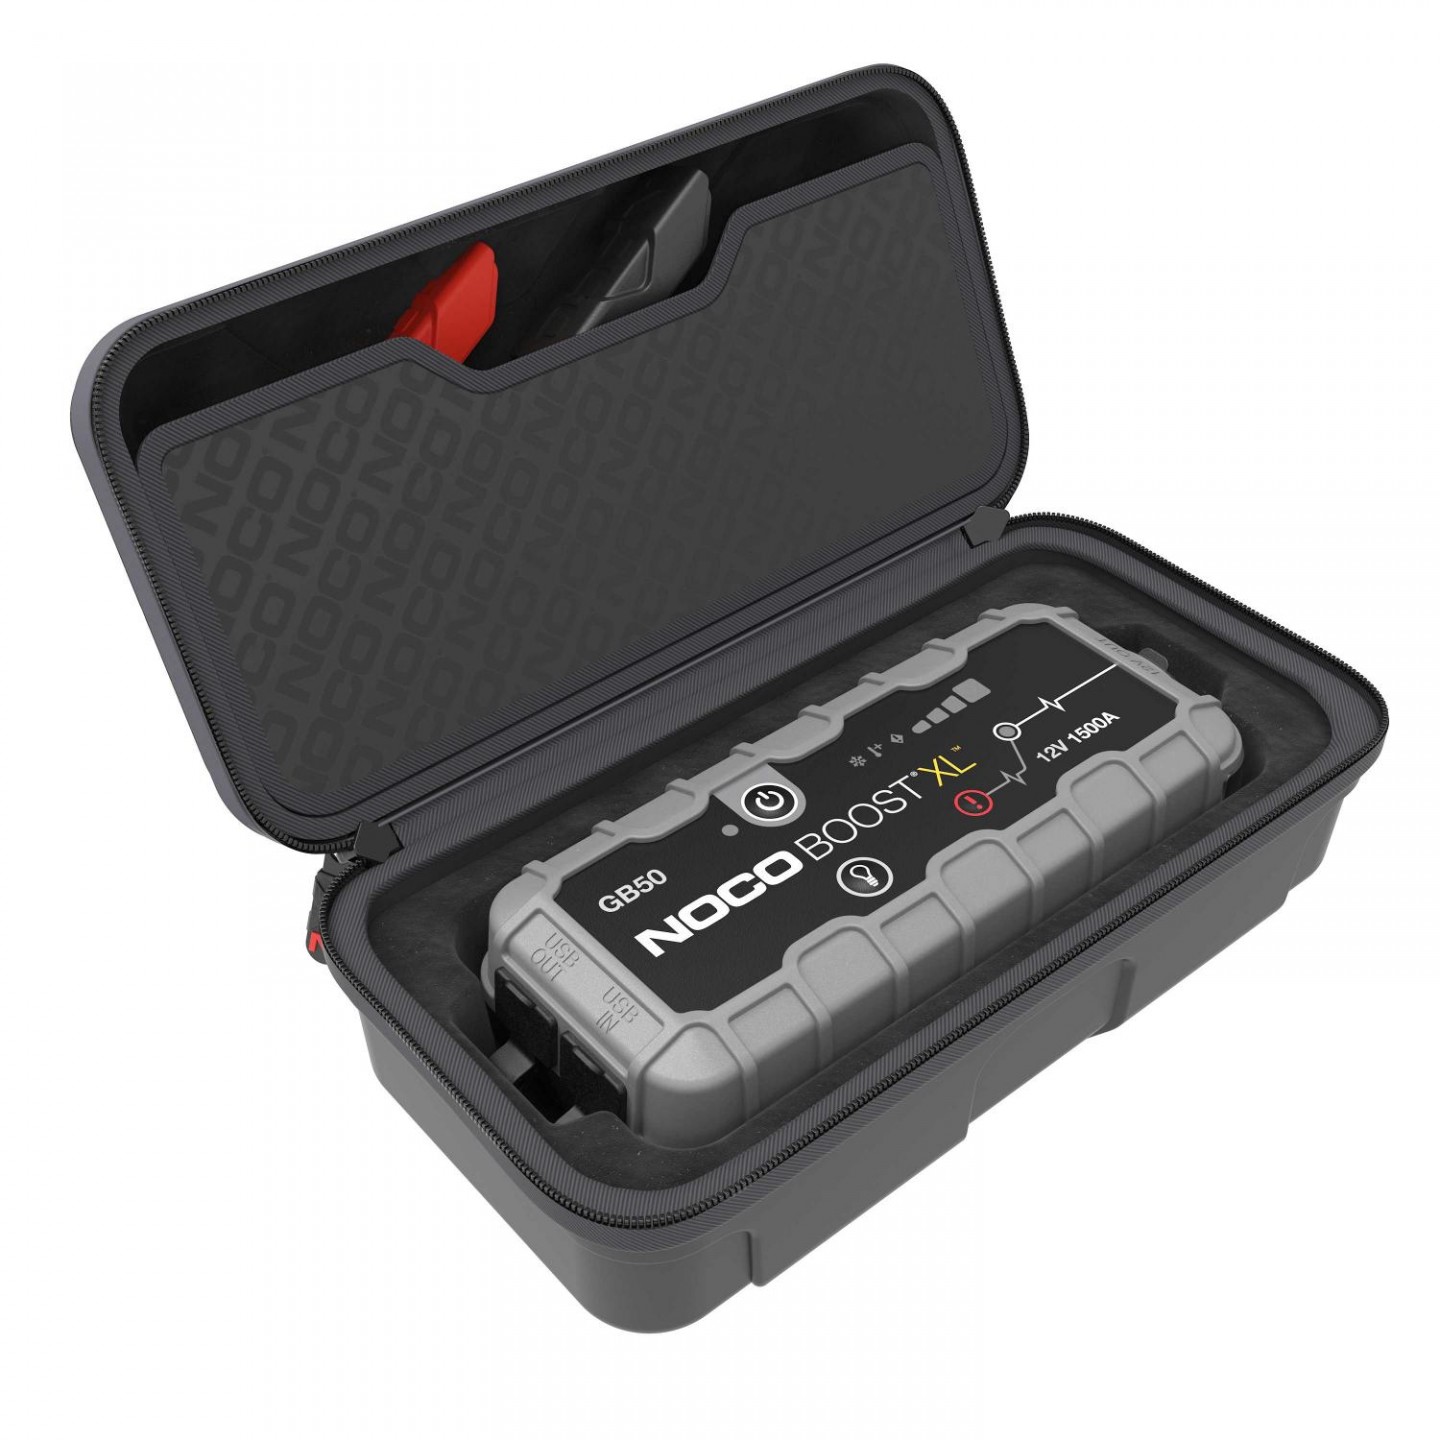 Noco Genius Boost XL GB50 Jump starter + GBC017 Case